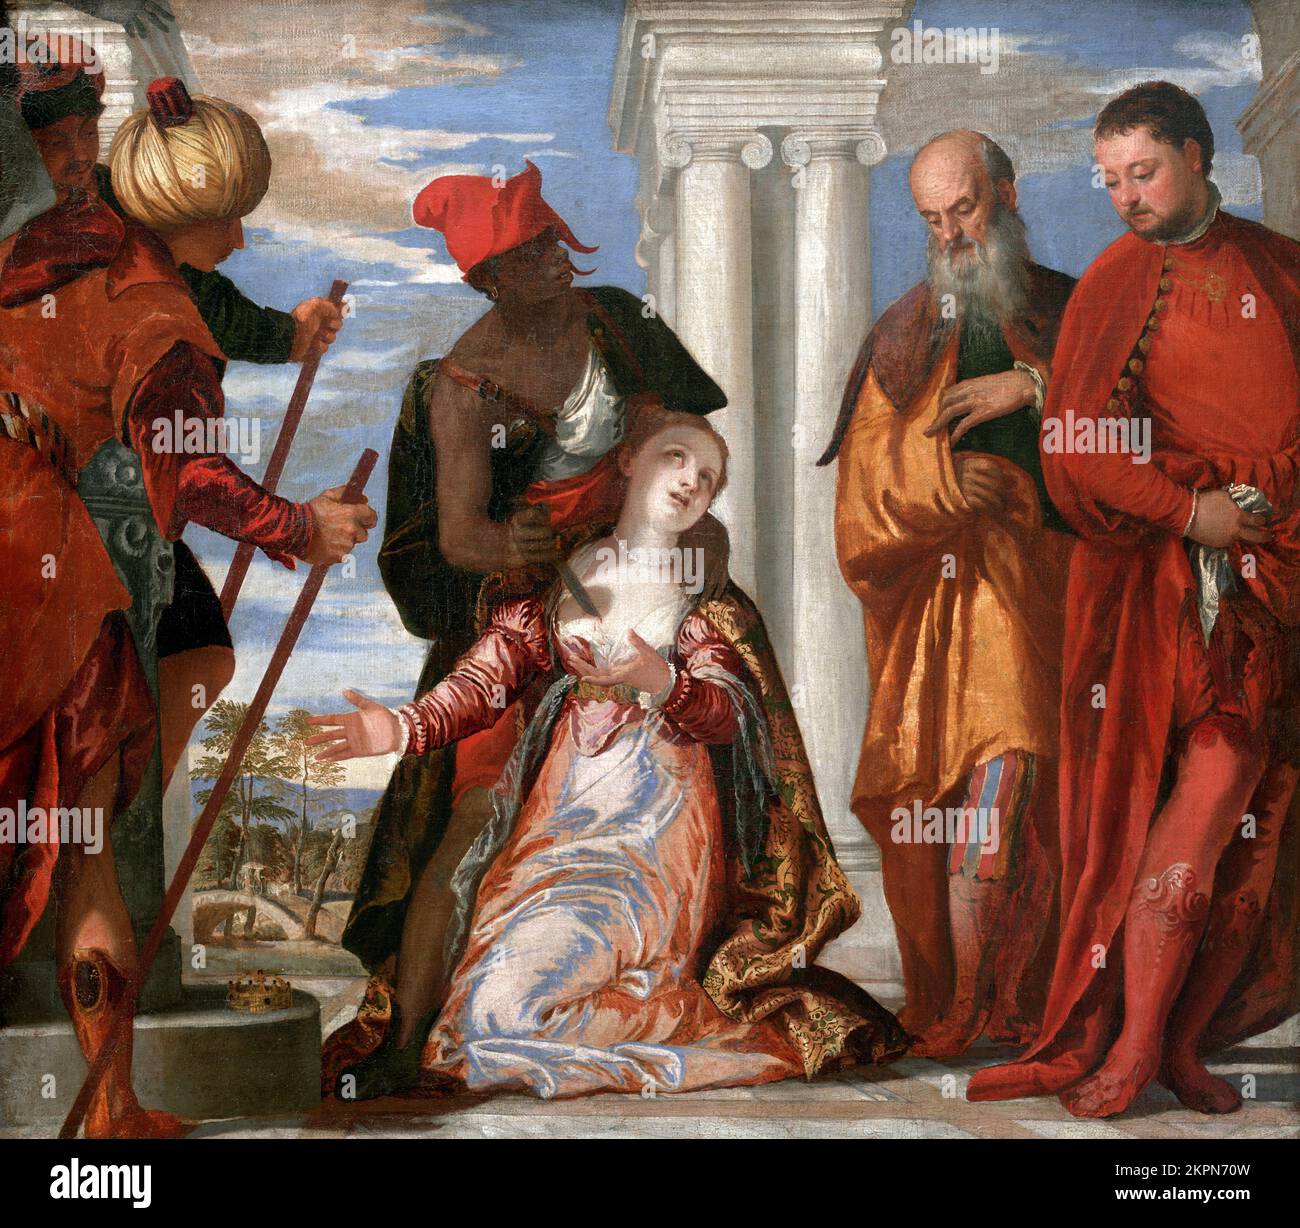 Martyre de Saint Justina par Paolo Veronese (1528-1588), huile sur toile, c.1573 Banque D'Images